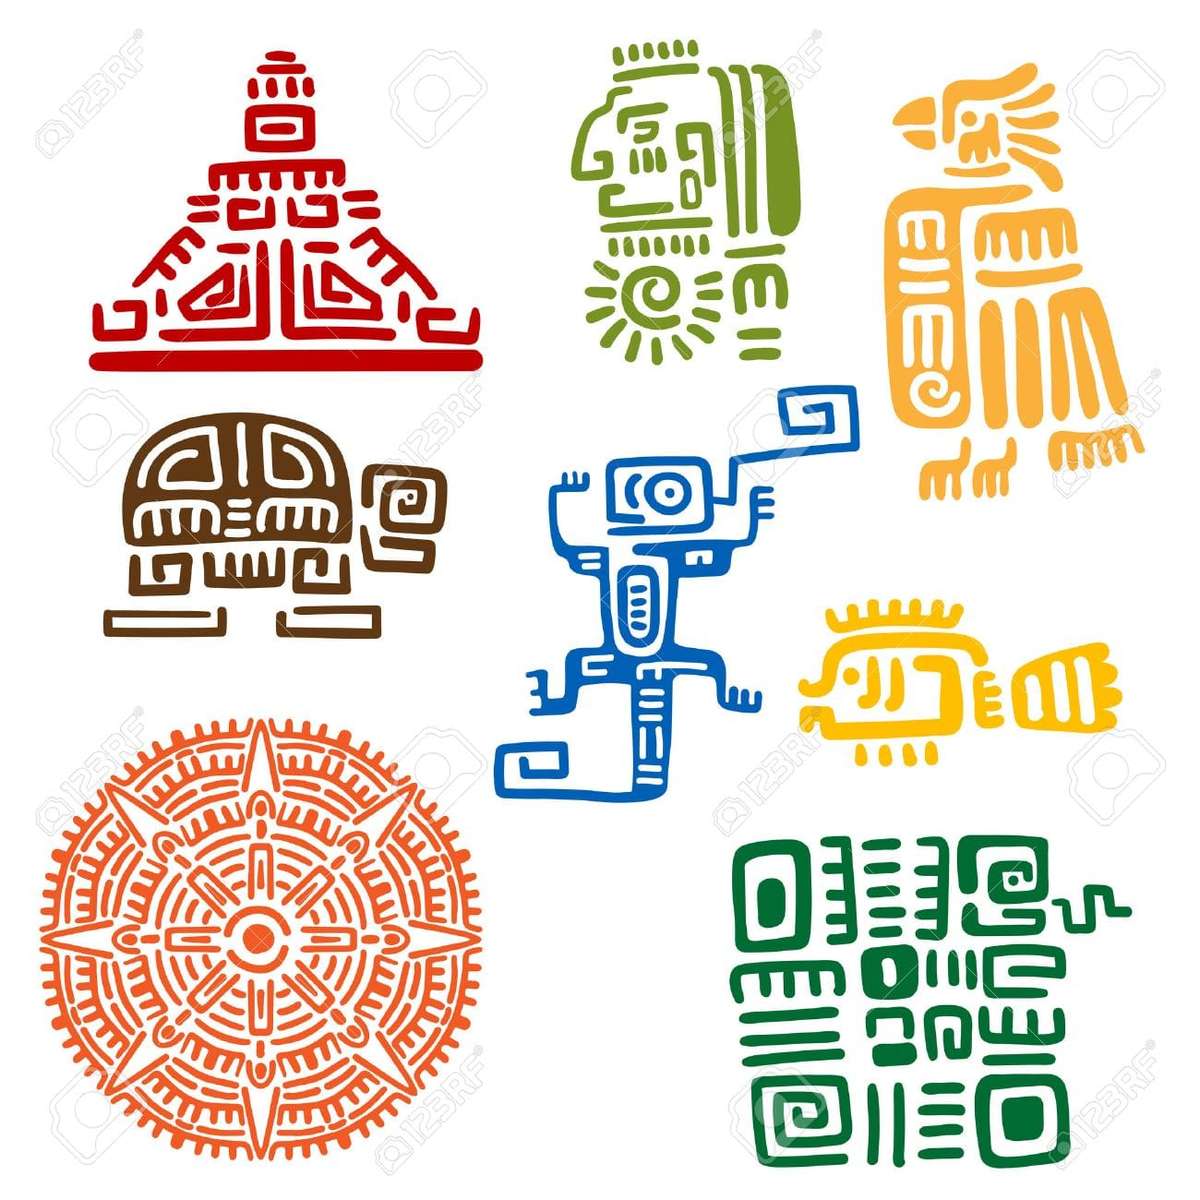 インカ人、アステカ人、マヤ人 ジグソーパズルオンライン